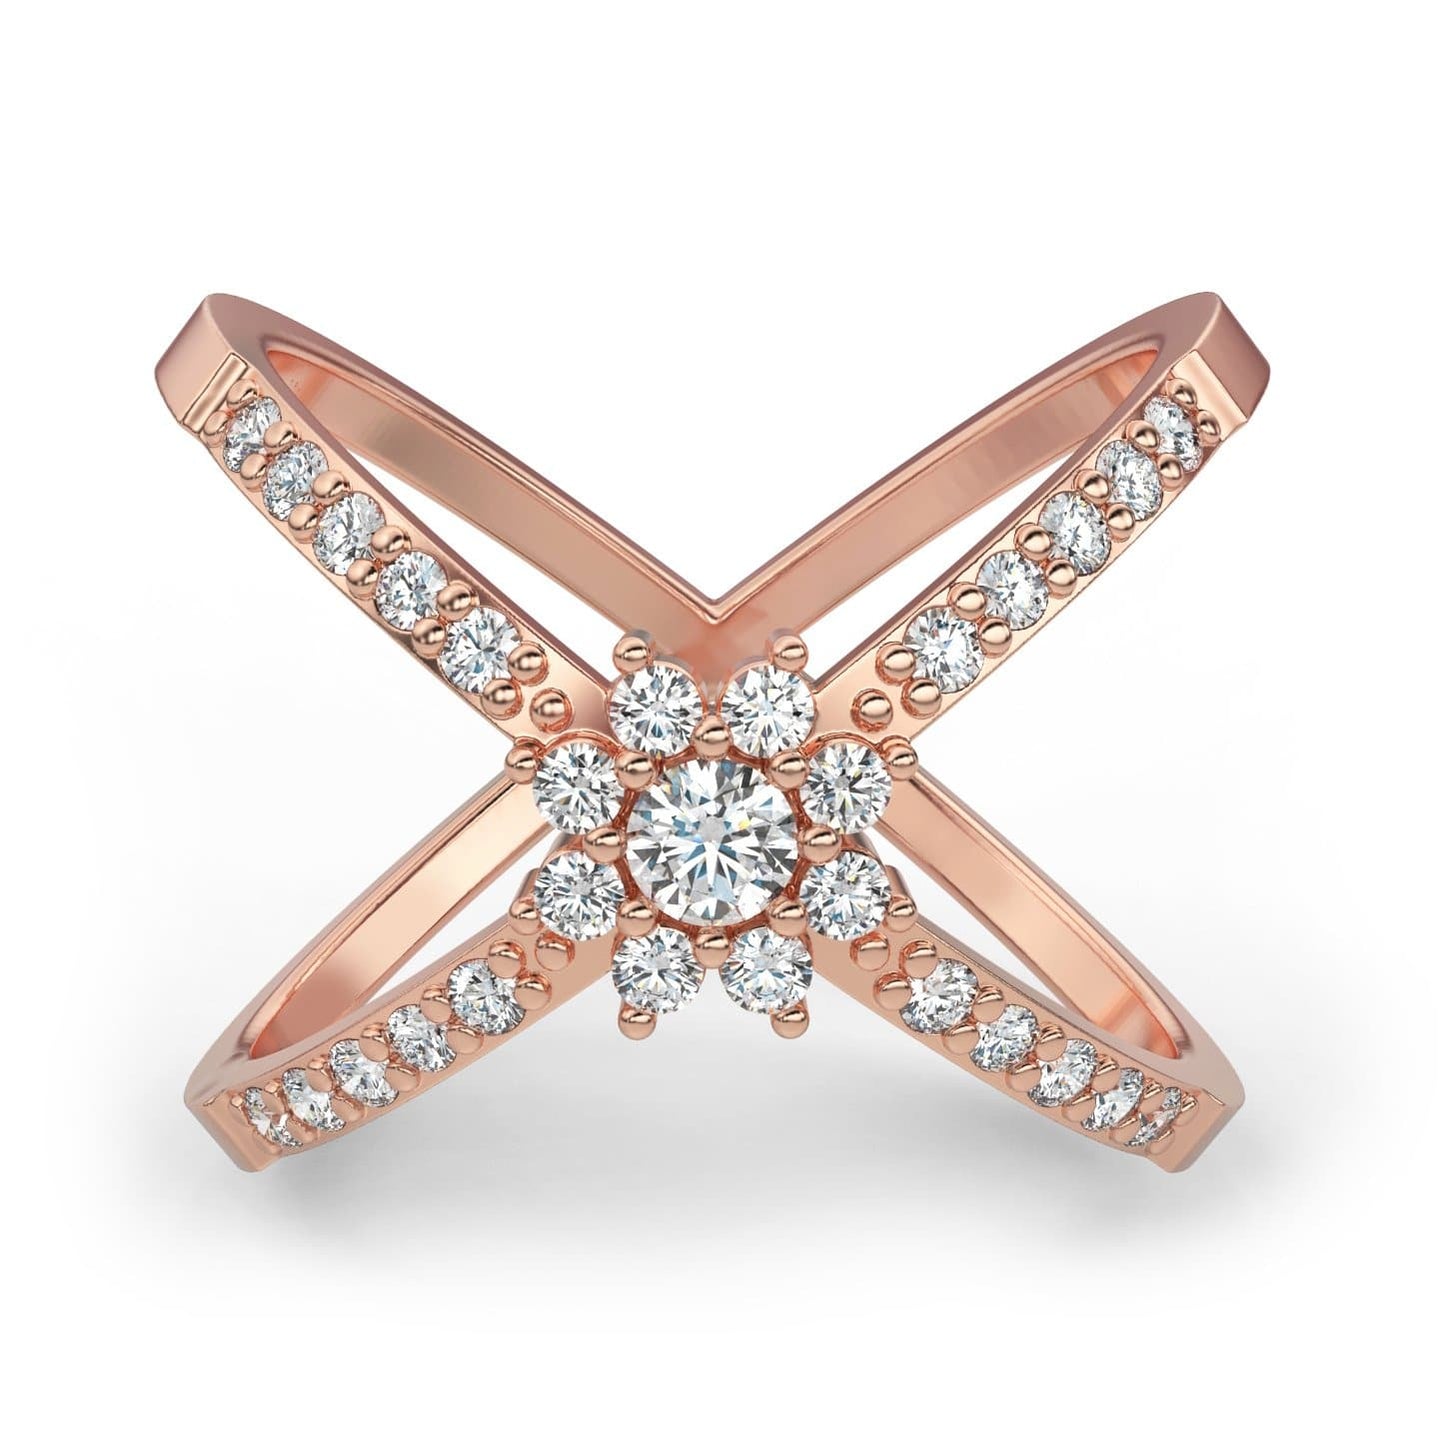 X Shape Flower Diamond Ring in 14k Gold